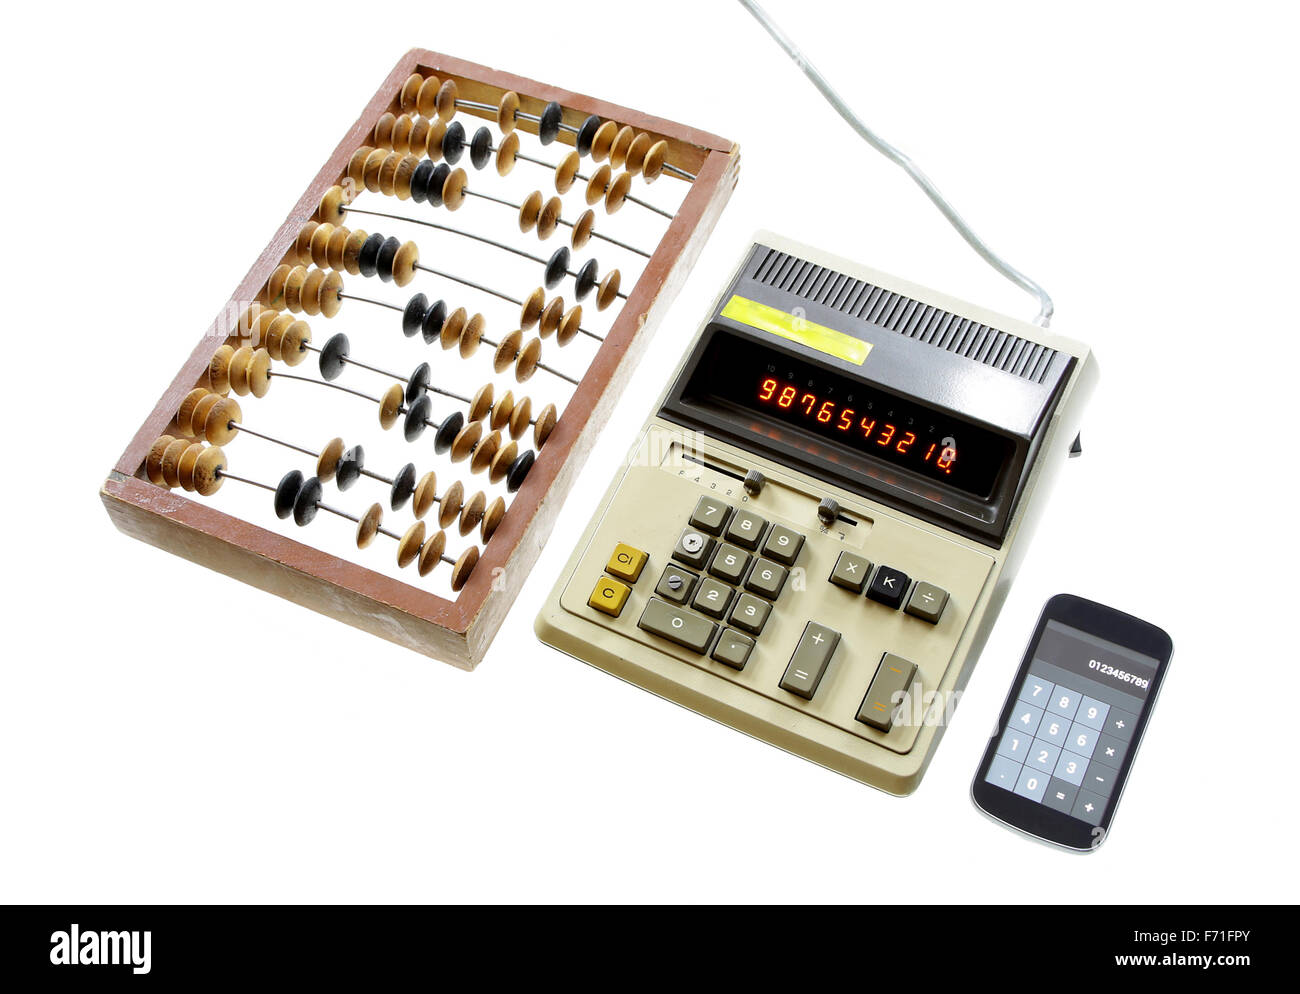 Évolution de l'abacus calcul calculatrice vintage et gadgets modernes isolé sur fond blanc Banque D'Images